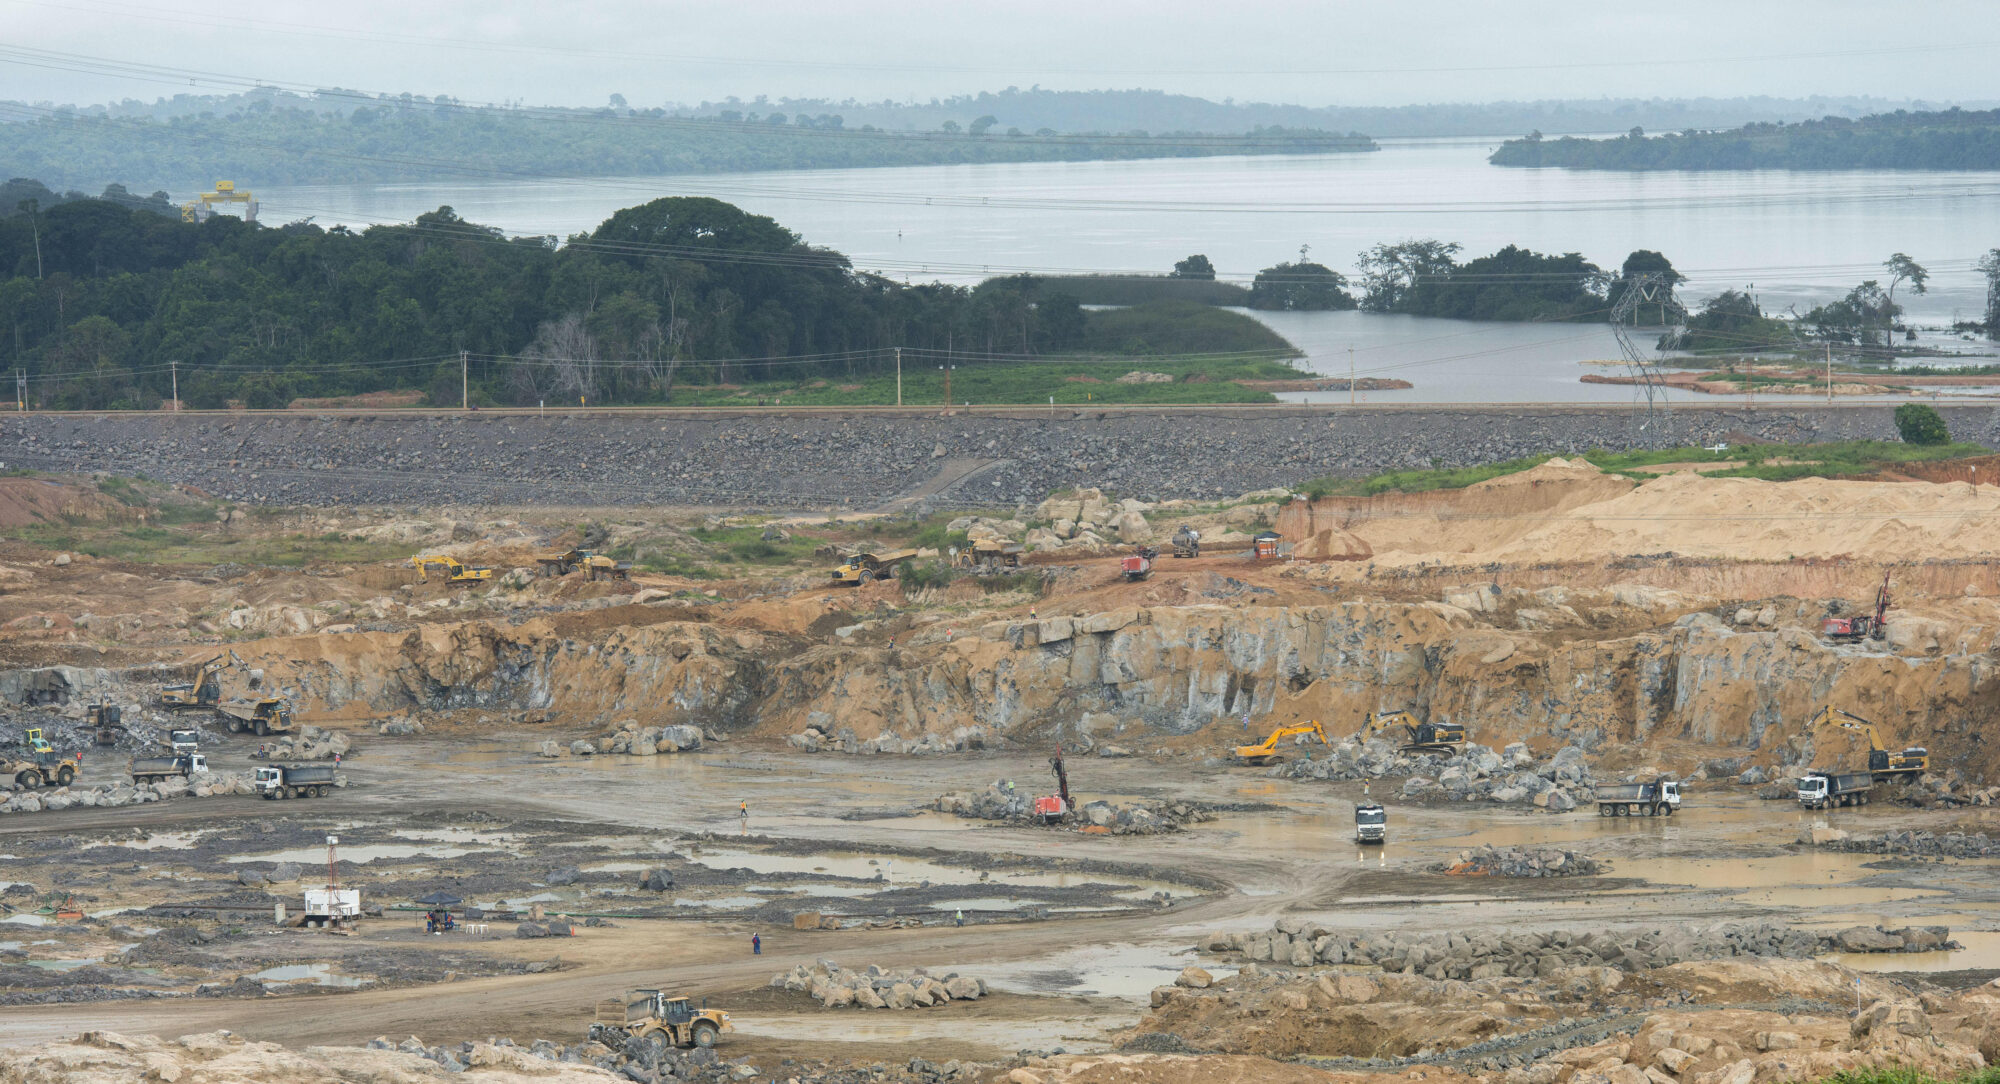 <p>Construcción de la central hidroeléctrica de Belo Monte en la Amazonia brasileña, fotografiada en 2014. El megaproyecto ha sido objeto de investigaciones por afectar a los derechos indígenas y al medioambiente. (Imagen: Alamy)</p>